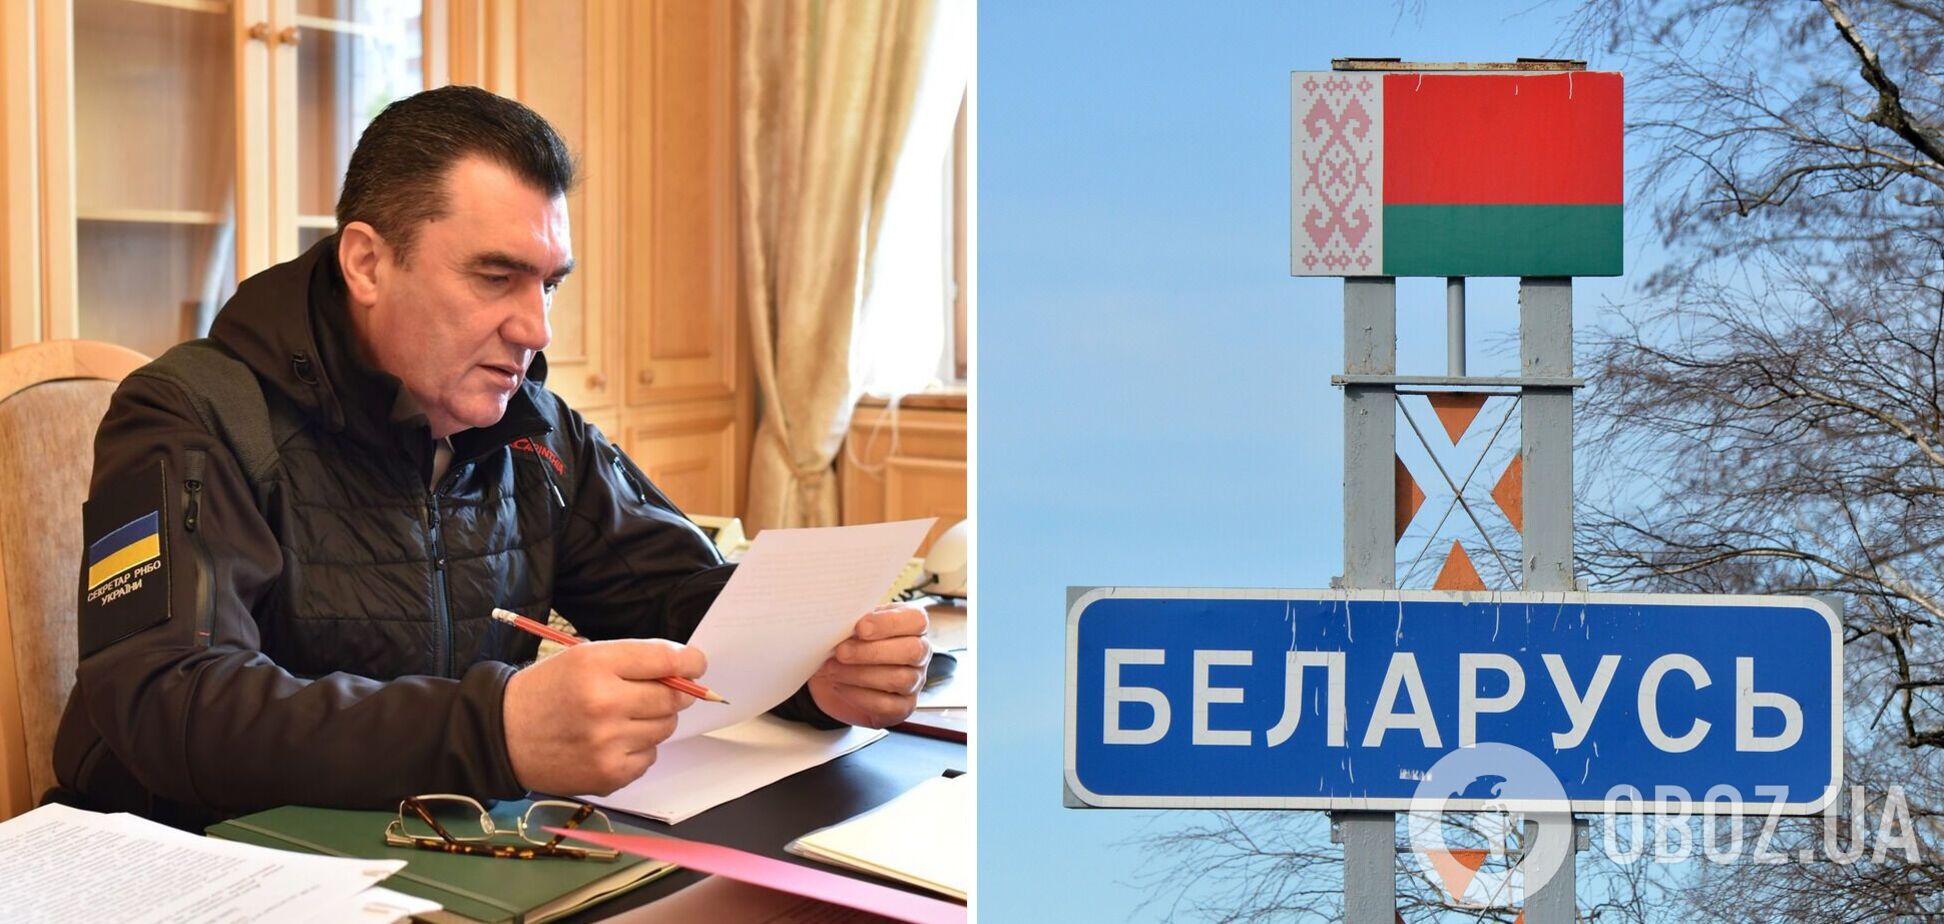 Данилов: у Беларуси нет достаточно сил, чтобы пойти в наступление на Украину